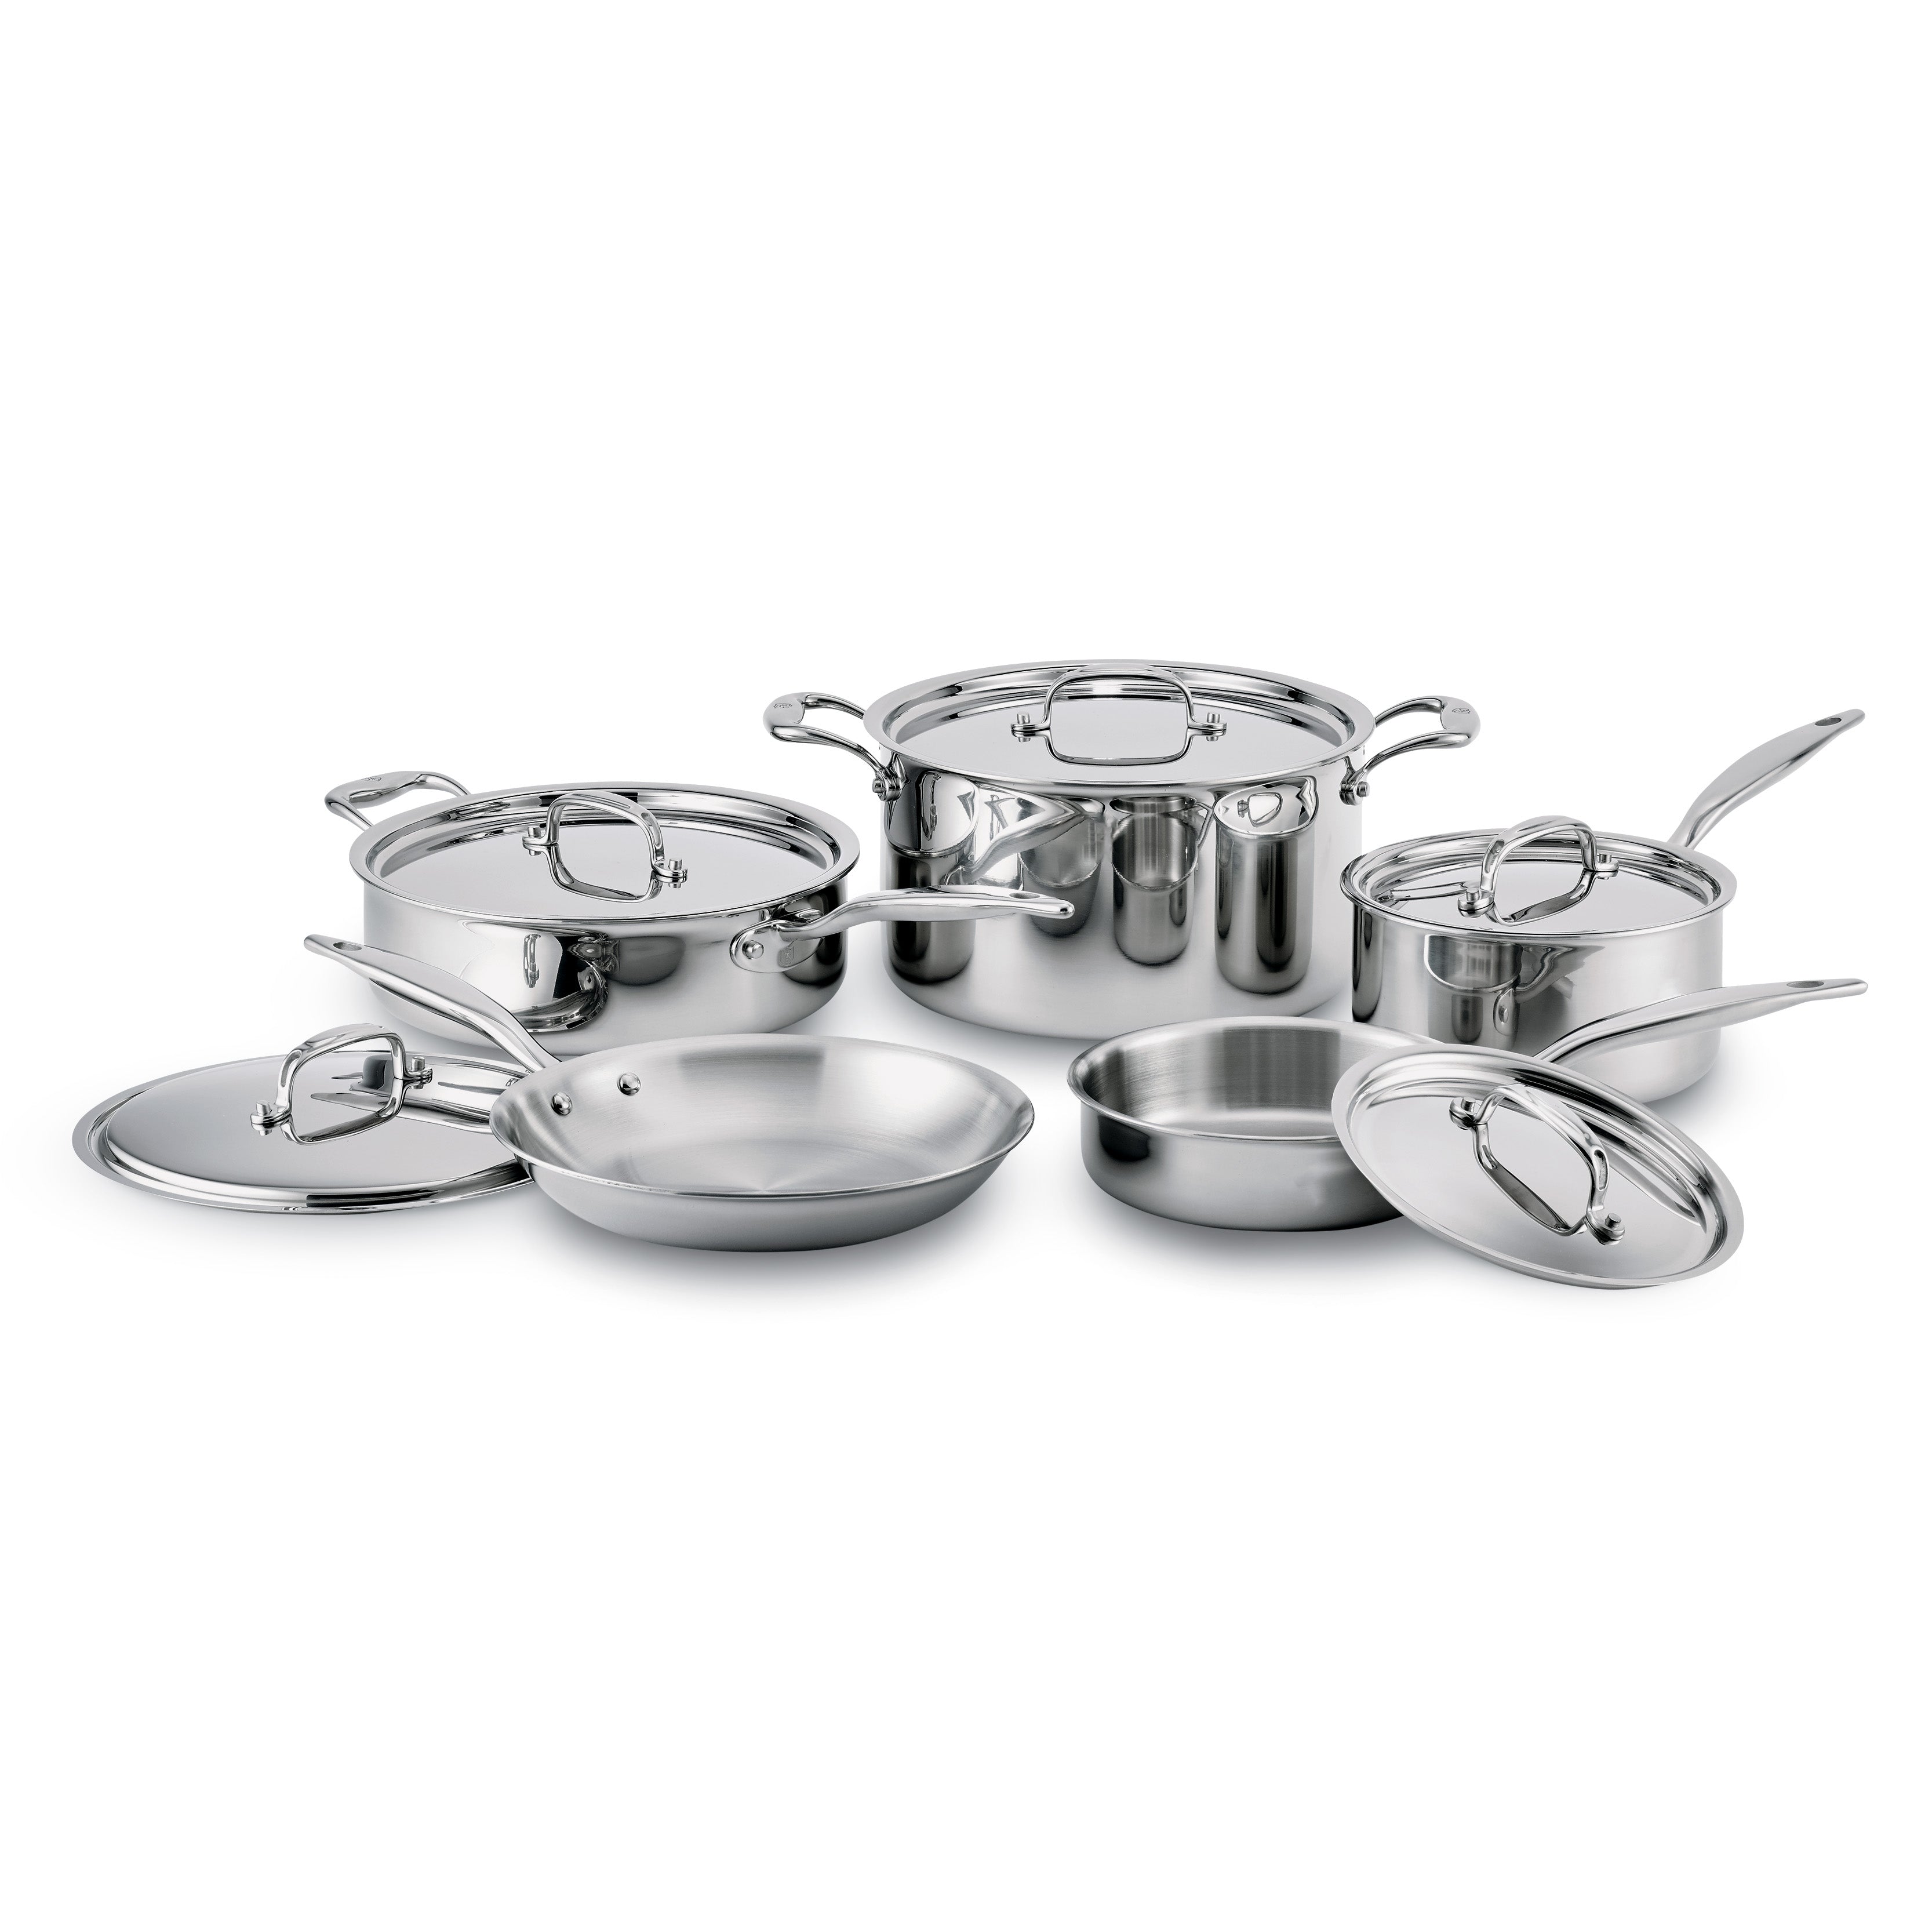 Top 3 Best Porcelain Cookware Sets - The Cookware Geek